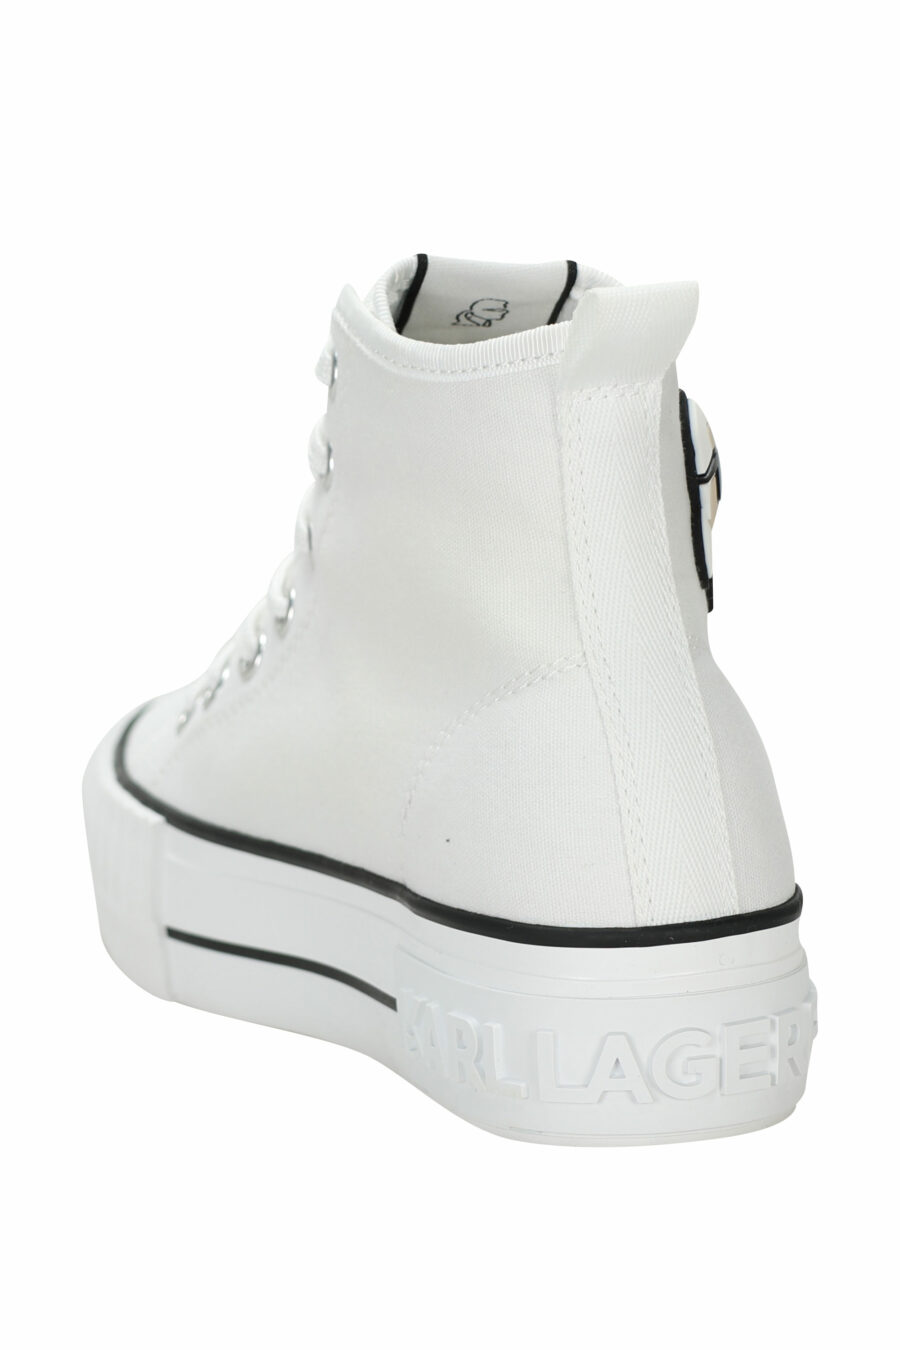 Zapatillas blancas altas estilo "converse" con minilogo de goma "karl" - 5059529384837 3